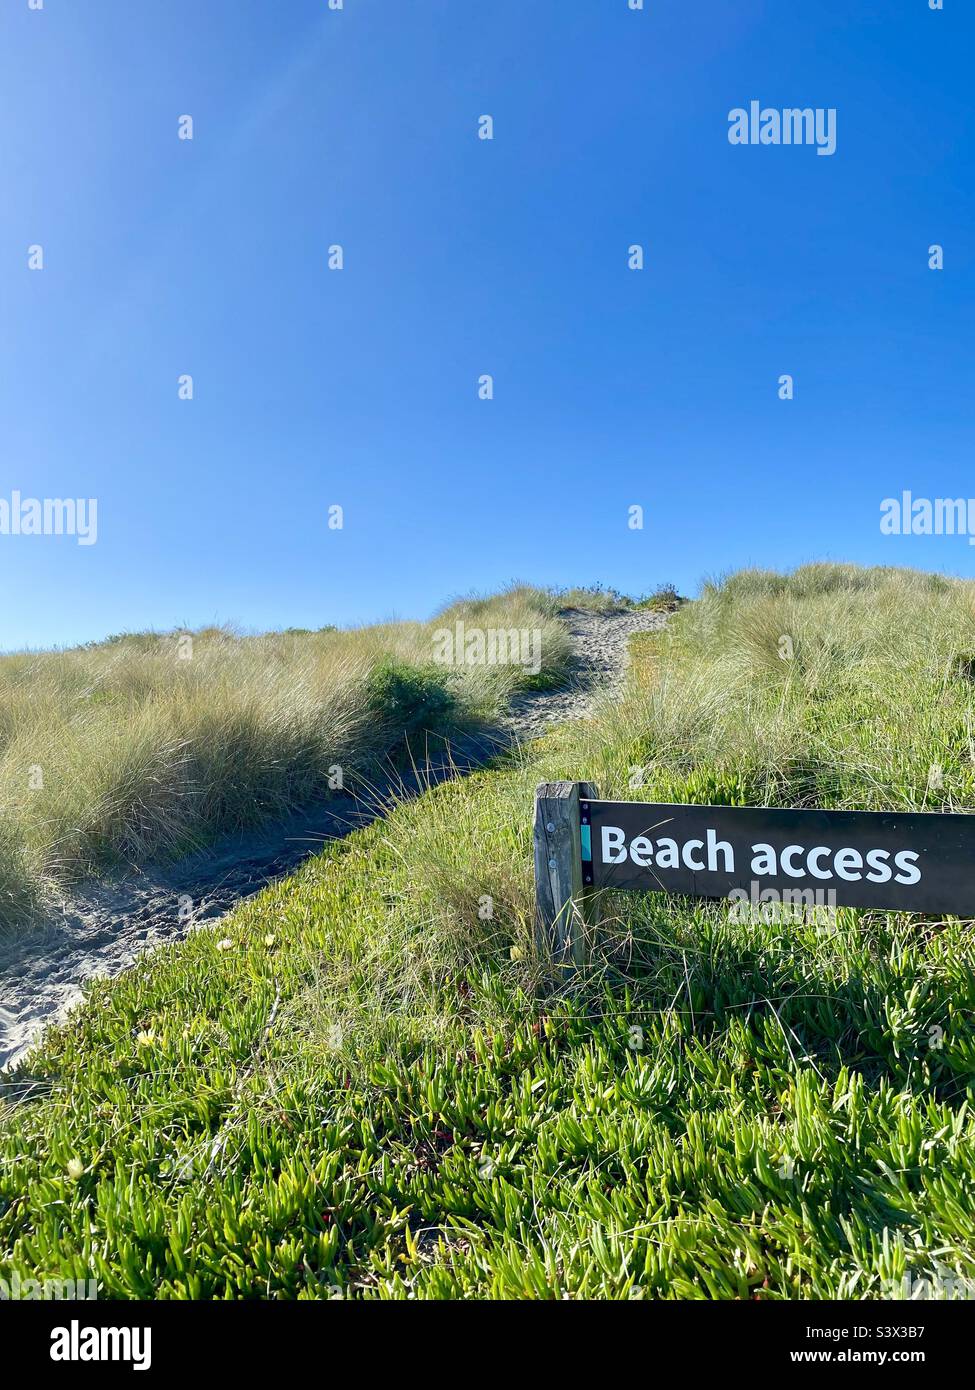 Ein Schild mit dem Zugang zum Strand befindet sich in gelben Eispflanzenblumen an den Küstensanddünen am Waimairi Beach, Christchurch, Neuseeland. Ein Sandweg führt über die Dünen. Blauer Himmel im Hintergrund. Stockfoto